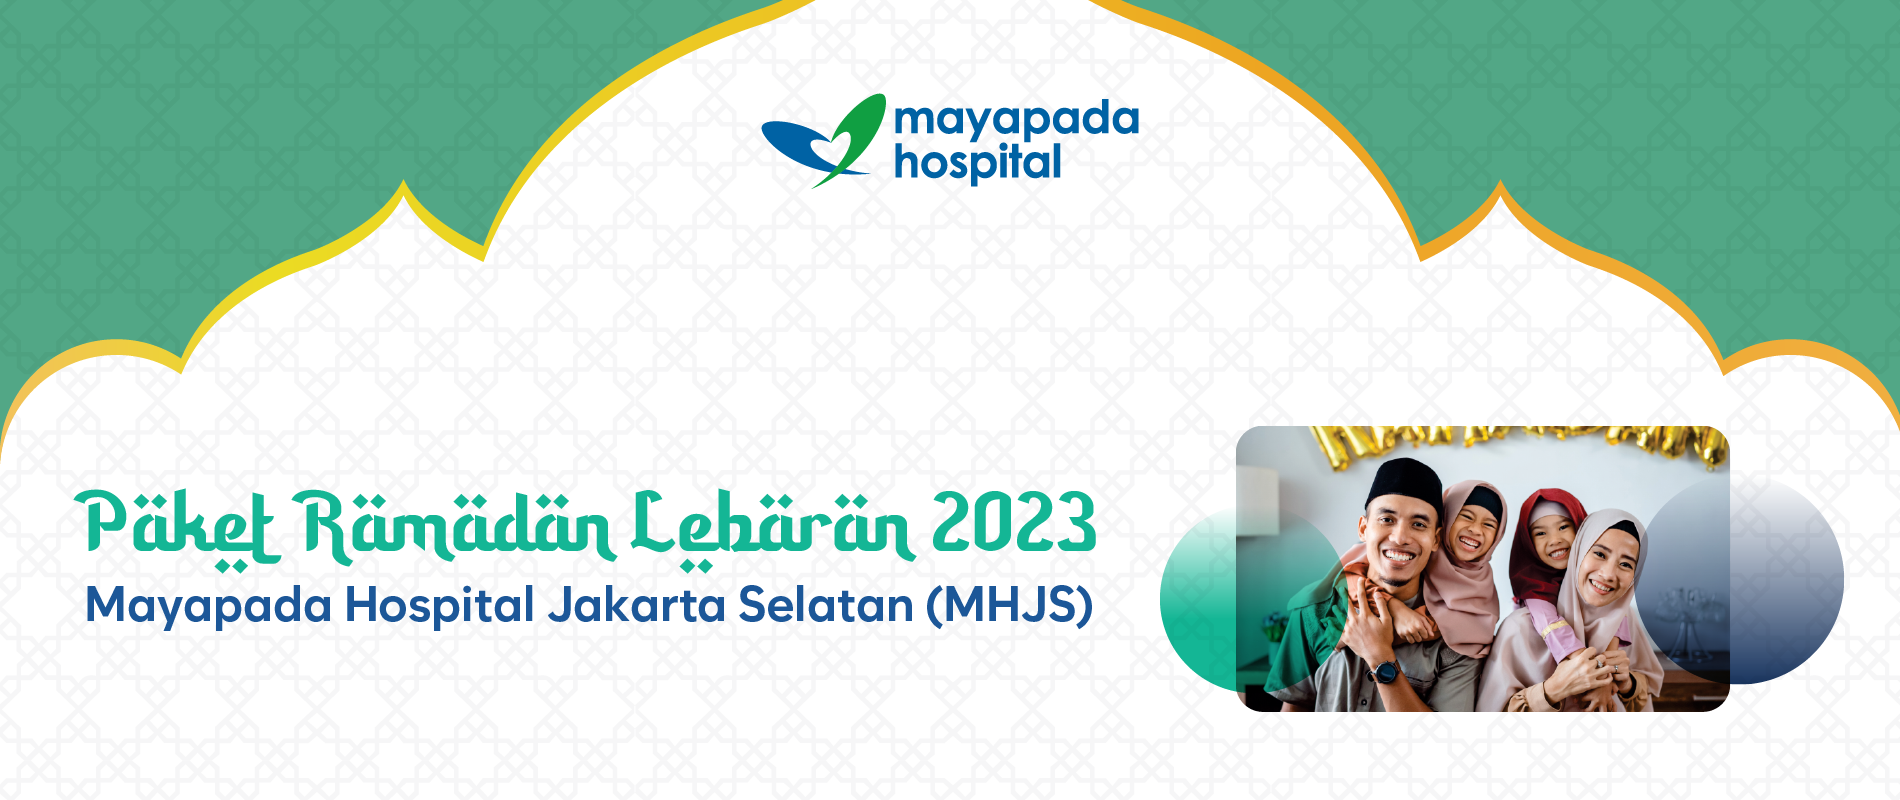 Paket Ramadan Lebaran 2023 Mayapada Hospital Jakarta Selatan (MHJS) IMG